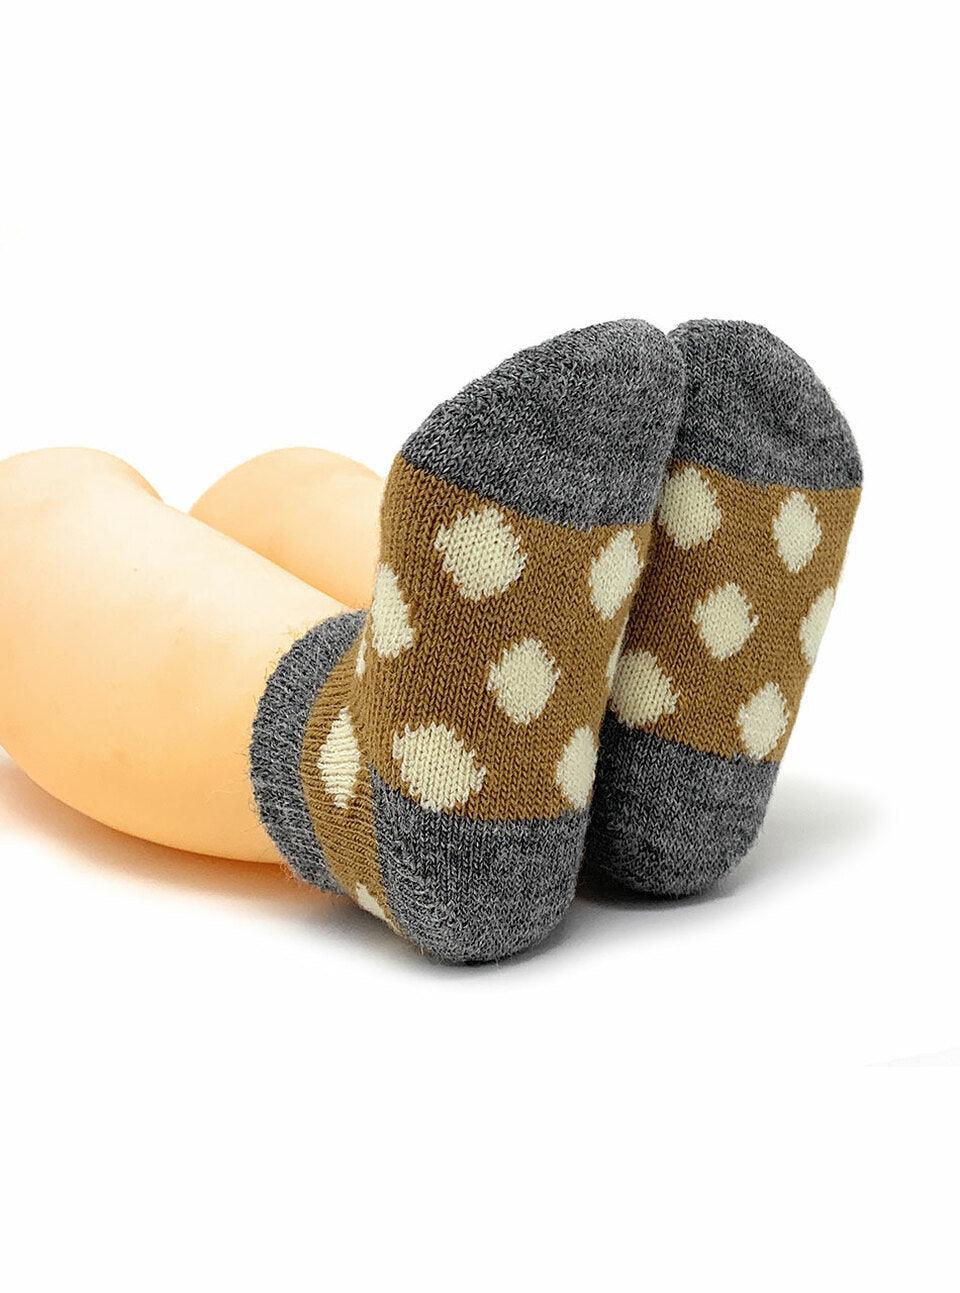 Baby Alpaca "Spot-On" Infant & Toddler Ankle Socks - Warrior Alpaca - The Sock Monster